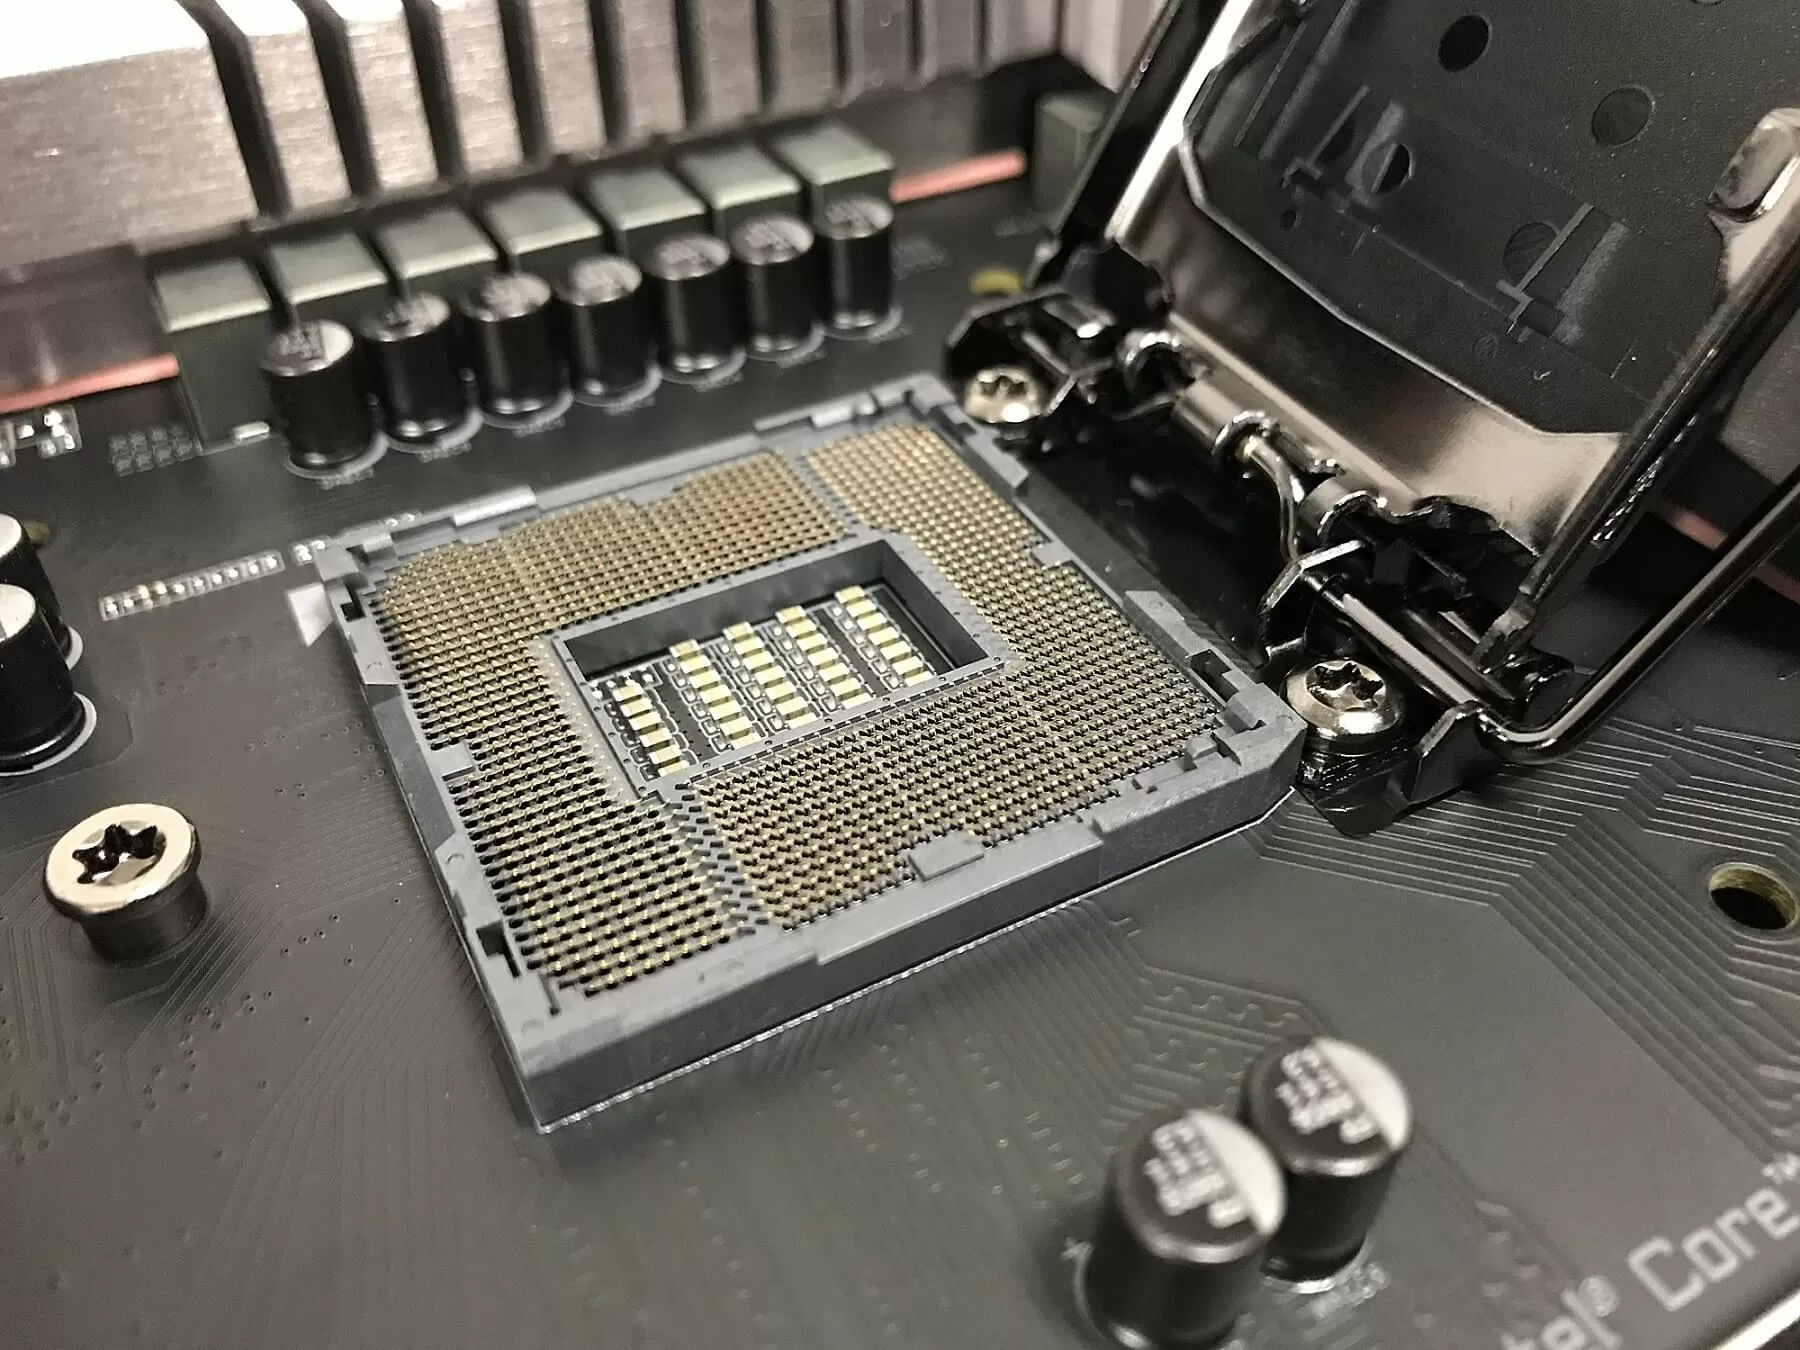 Confirmed: LGA 115x coolers work with Comet Lake-S LGA 1200 socket